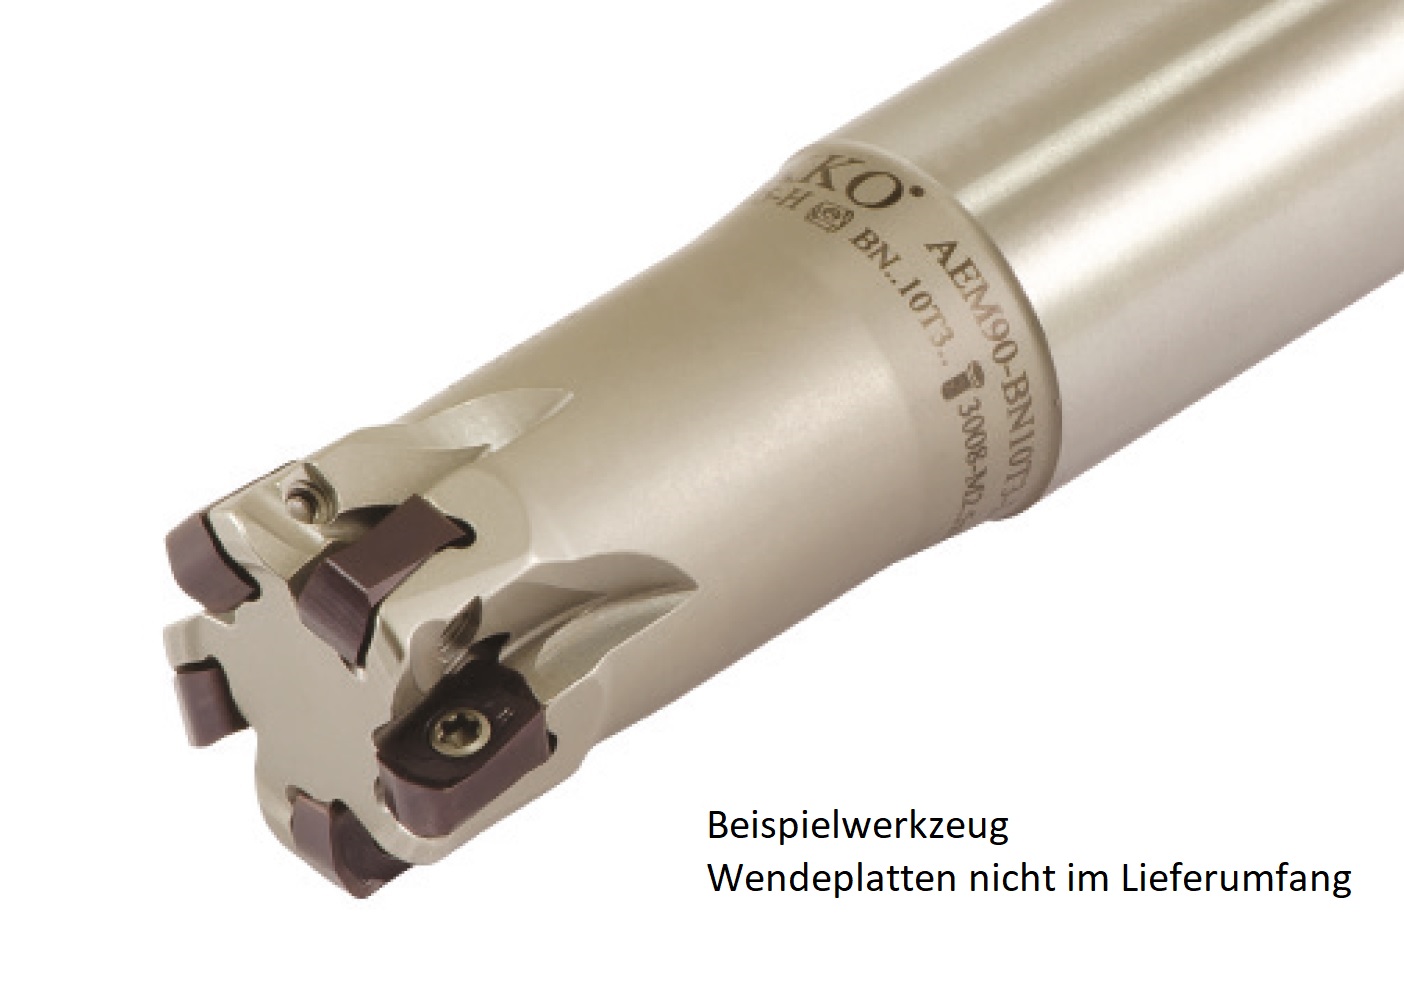 AKKO-Hochvorschub-Schaftfräser ø 25 mm für Wendeplatten, kompatibel mit Pramet BNGX 10T3....
Schaft-ø 25, mit Innenkühlung, Z=4